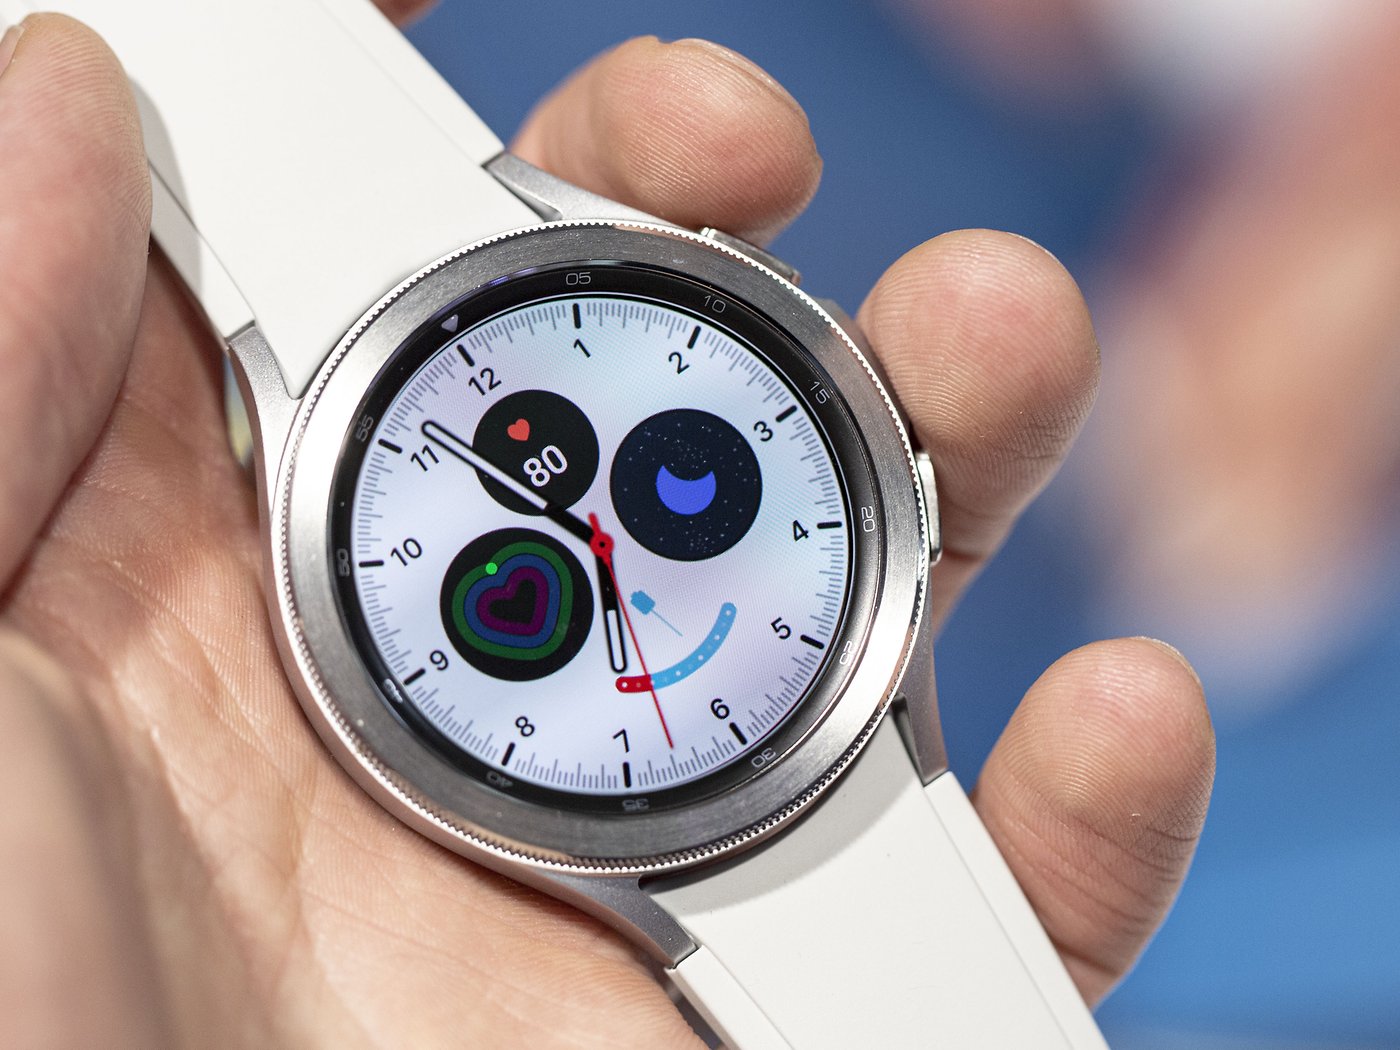 Bạn có thể đo nhiệt độ trên Samsung Galaxy Watch 5 không? Điều này hoàn toàn có thể với tính năng đo nhiệt độ độc đáo của chiếc đồng hồ thông minh này. Tìm hiểu thêm về cách sử dụng tính năng này và các tùy chọn khác bằng cách xem ảnh liên quan.